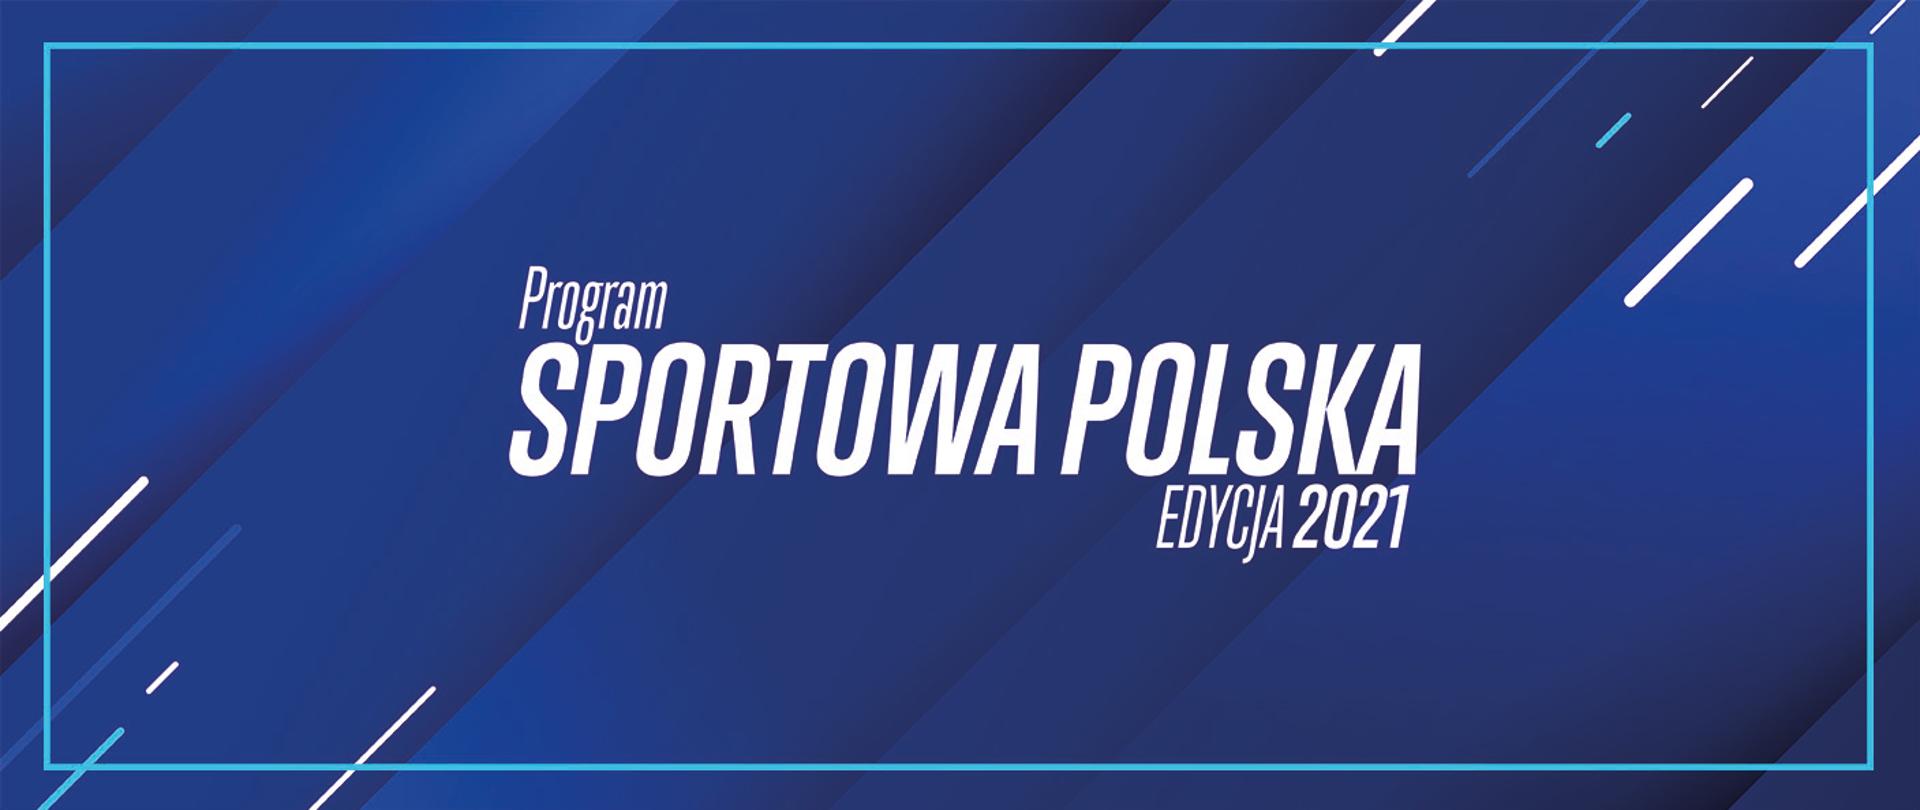 Program Sportowa Polska Edycja 2021